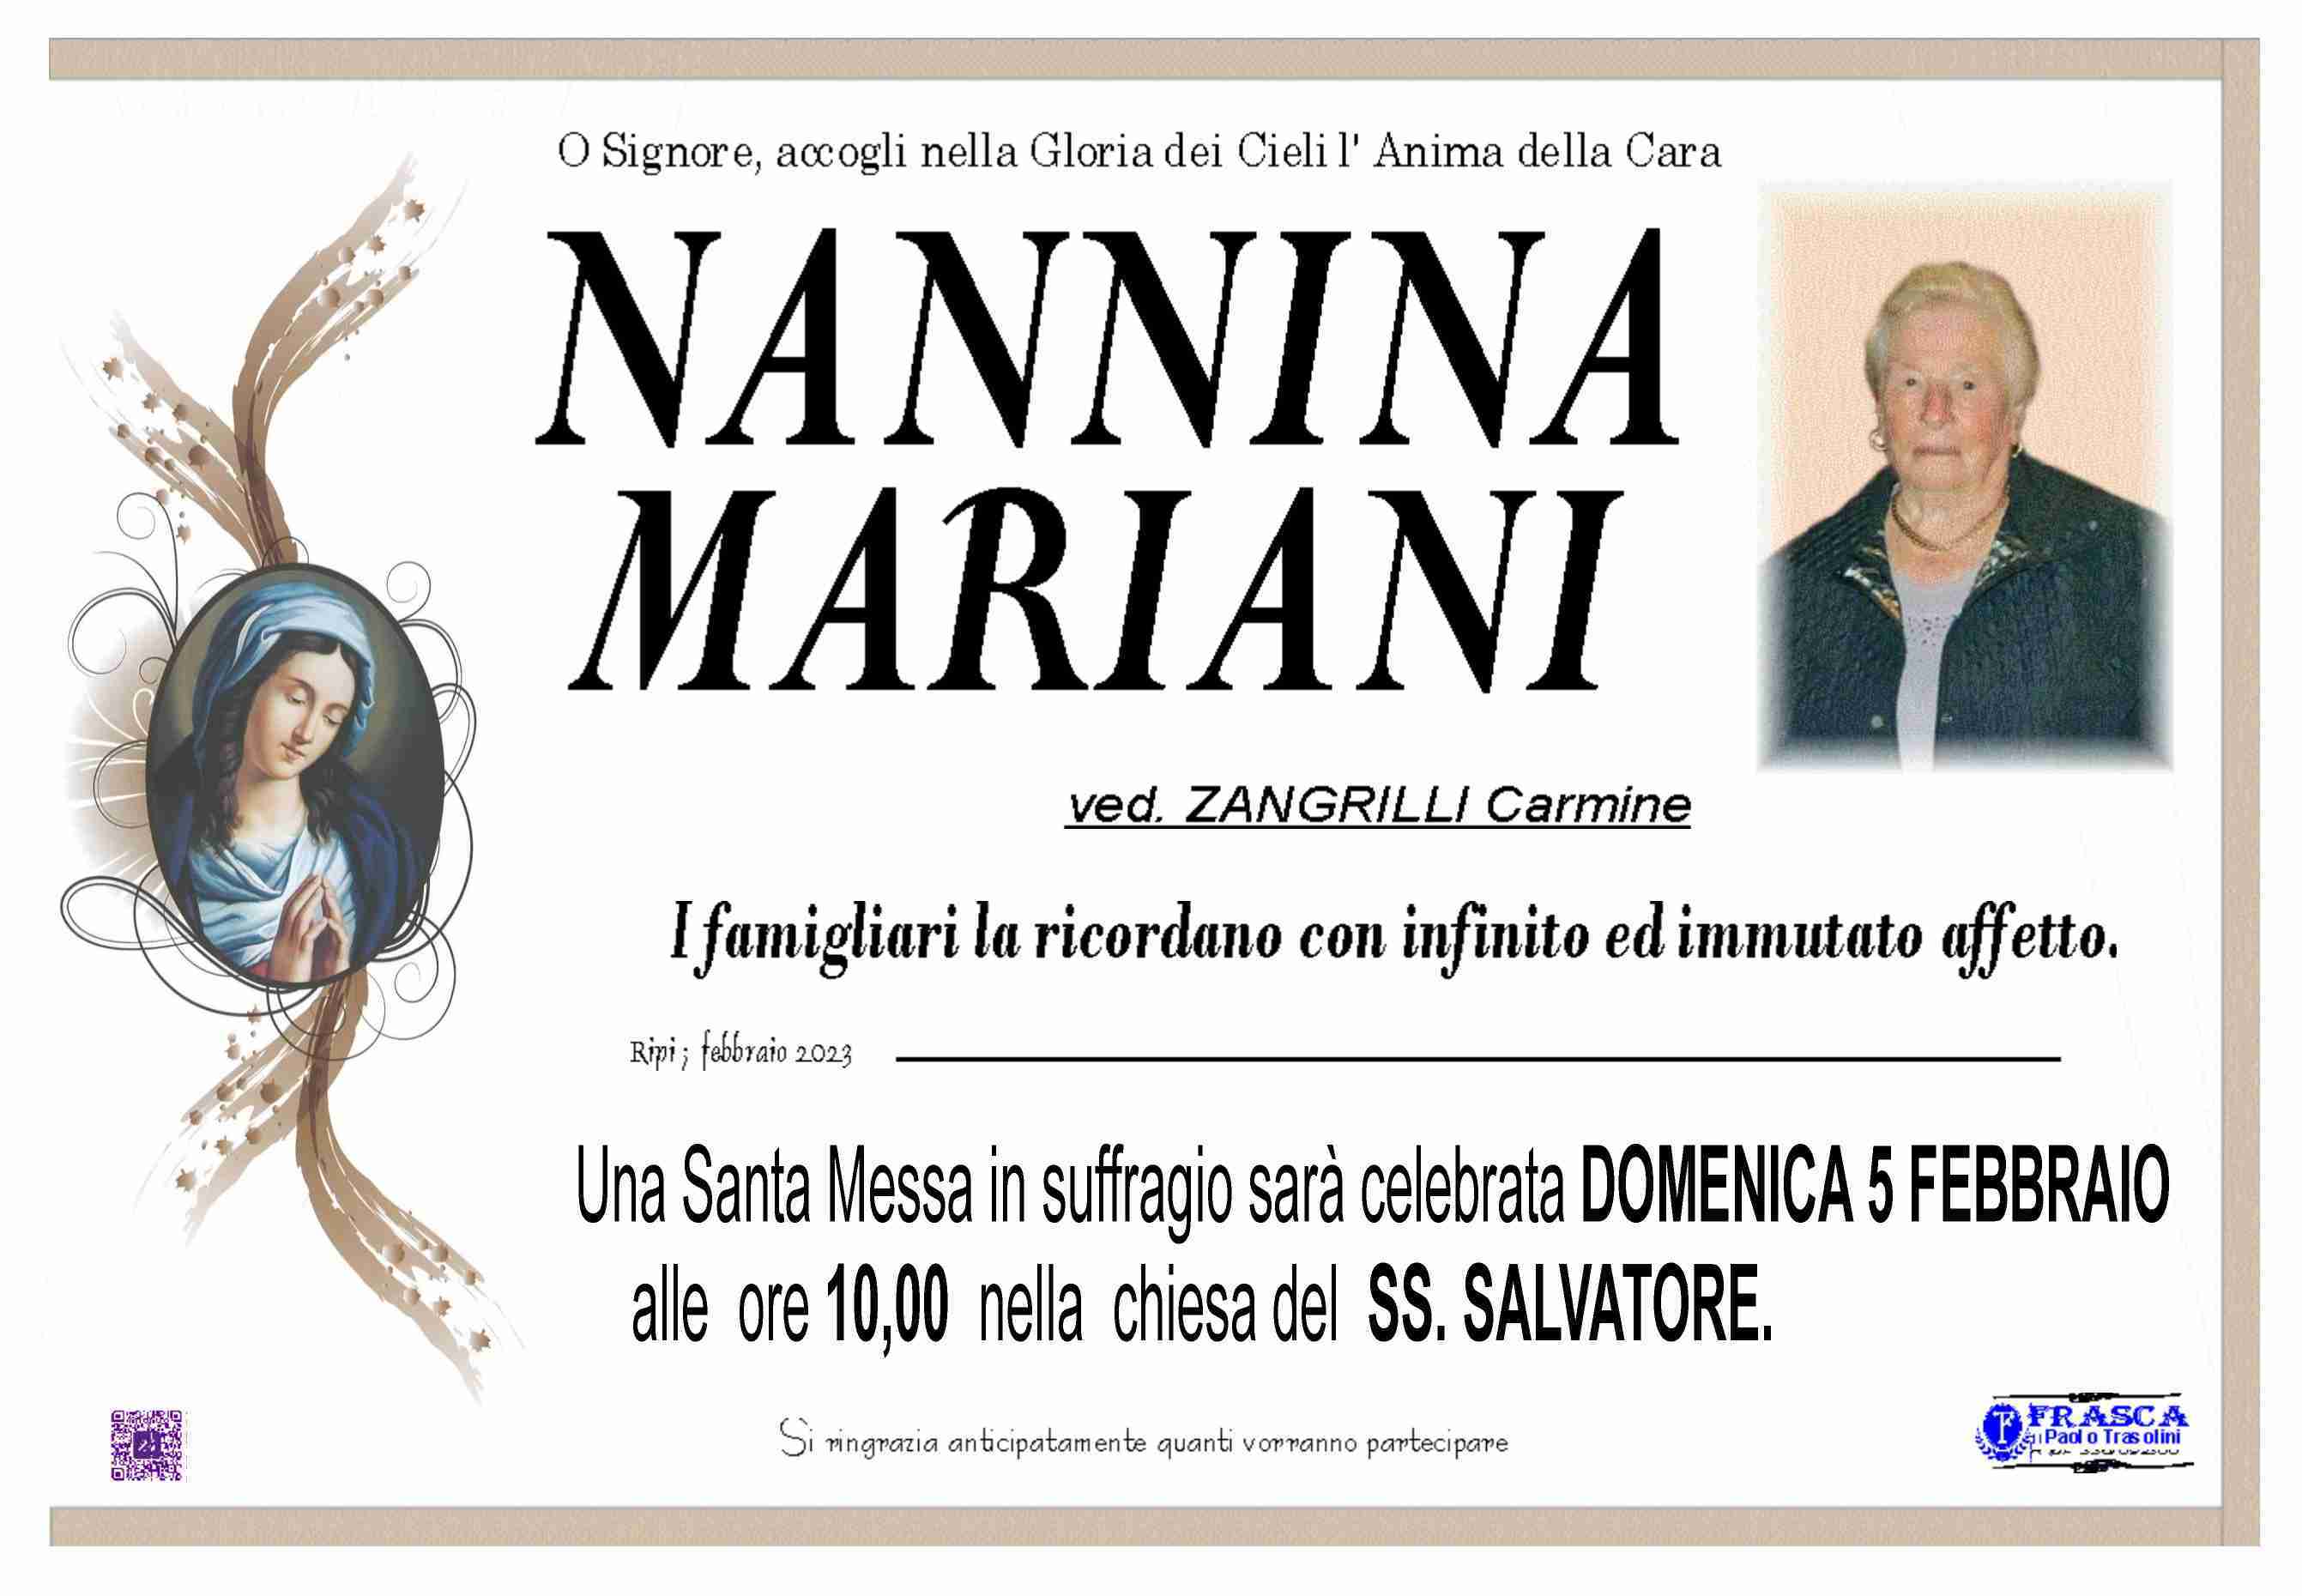 Nannina Mariani